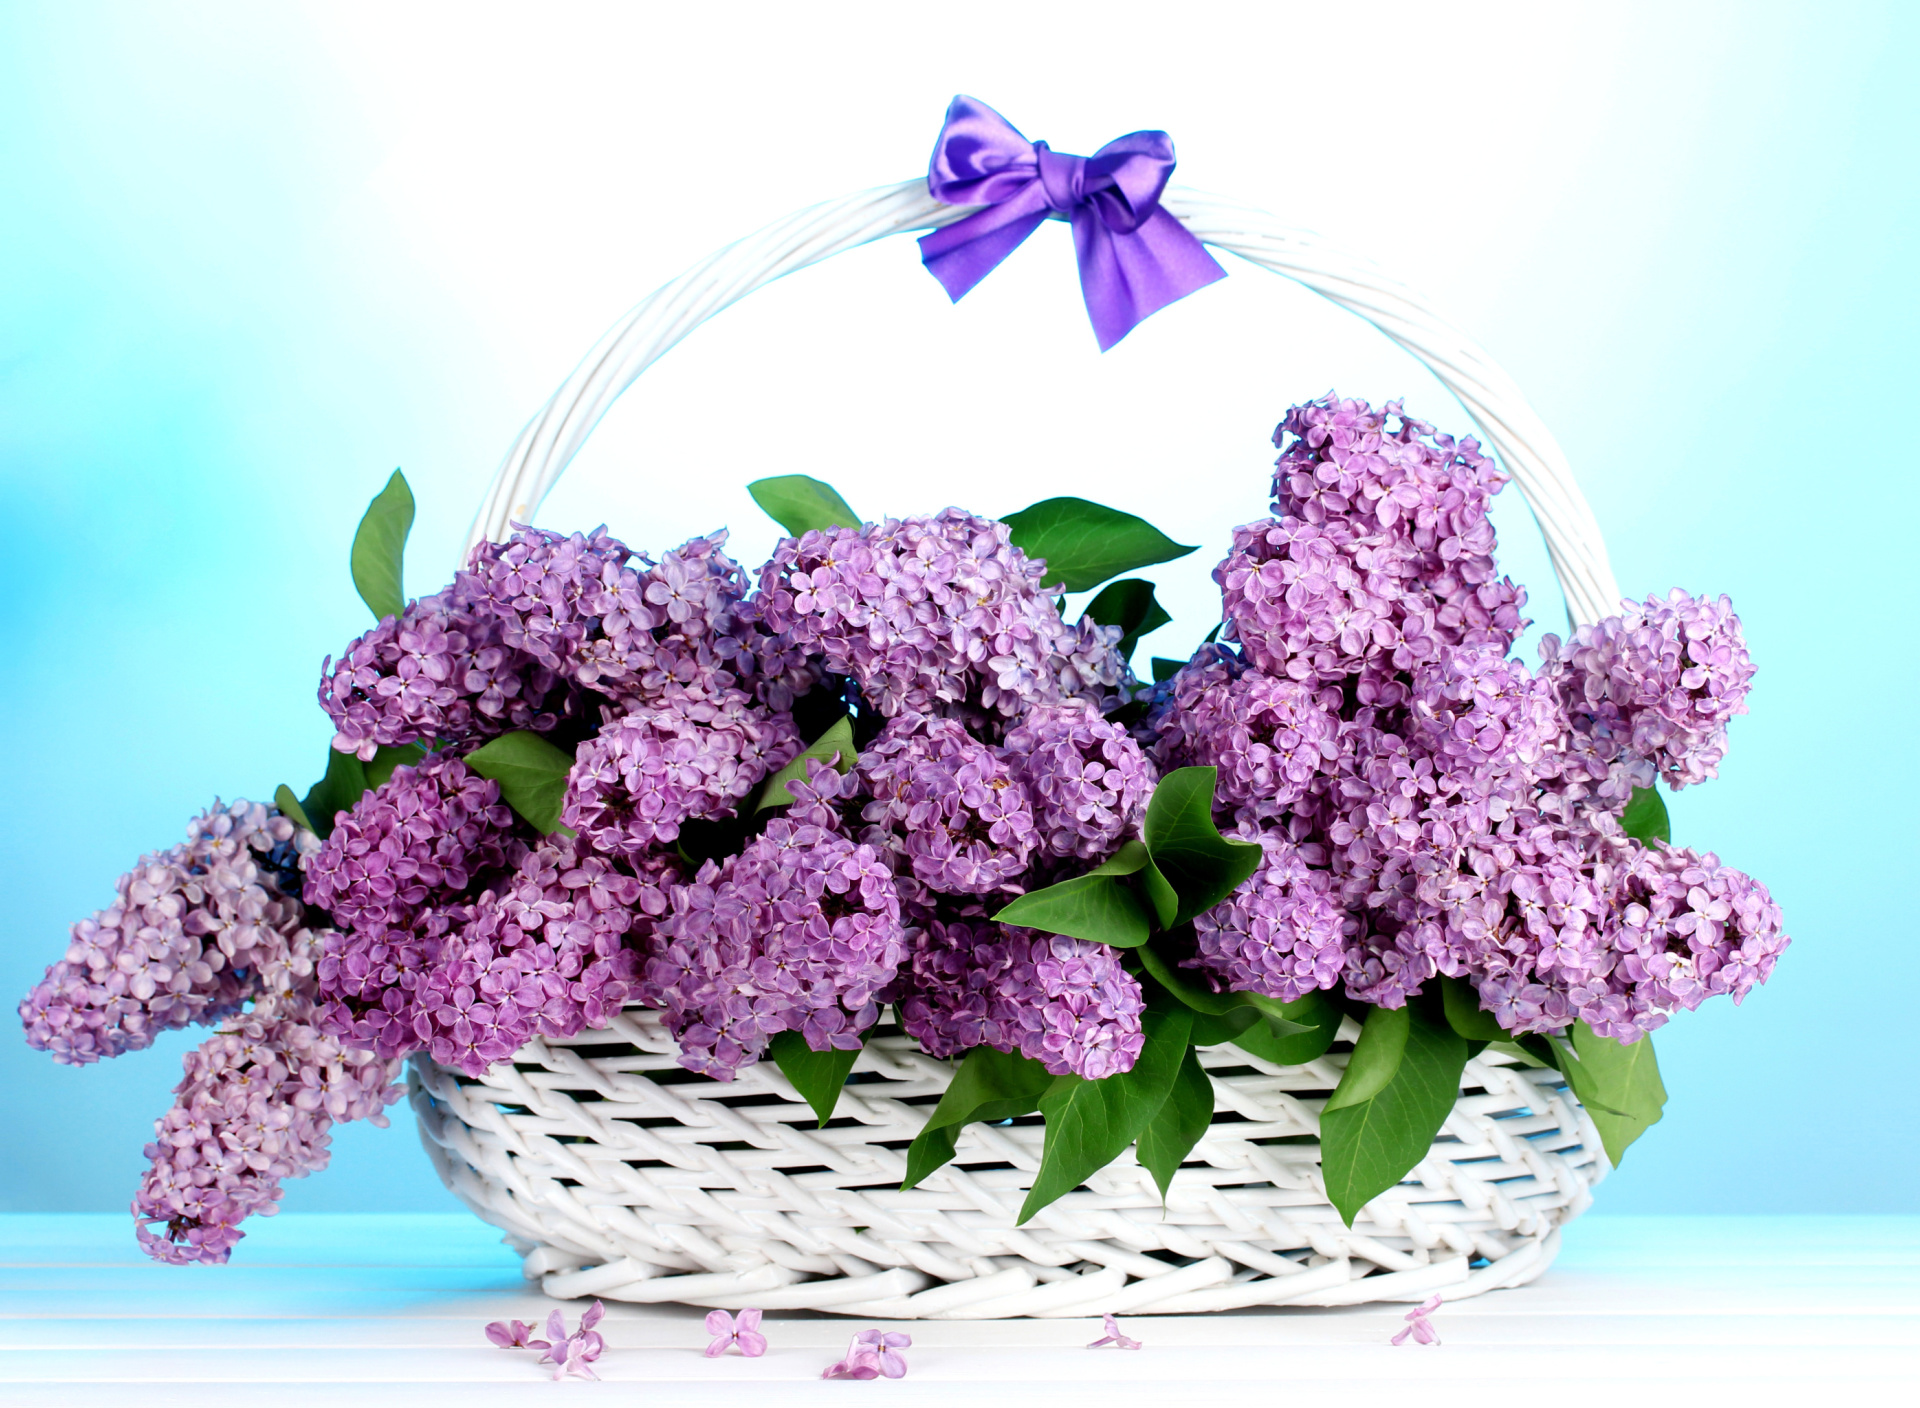 Обои Baskets with lilac flowers 1920x1408